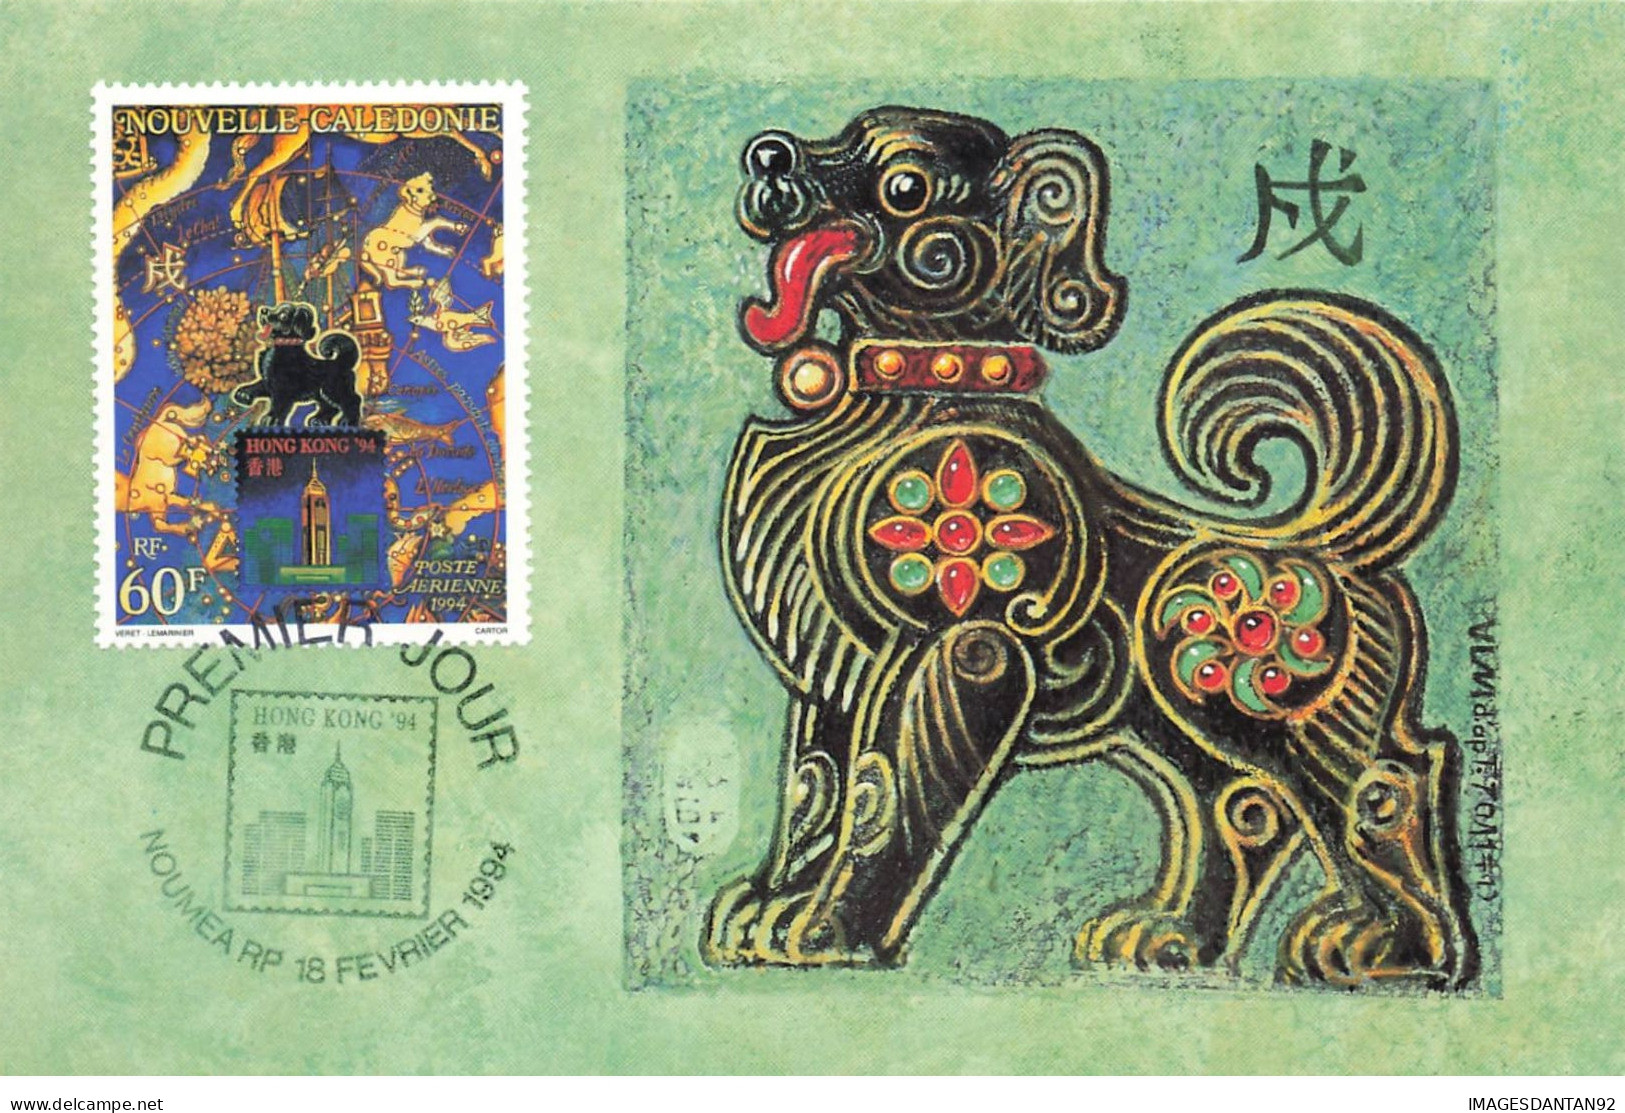 CARTE MAXIMUM #23503 NOUVELLE CALEDONIE NOUMEA 1994 HONGKONG HONG KONG - Maximum Cards